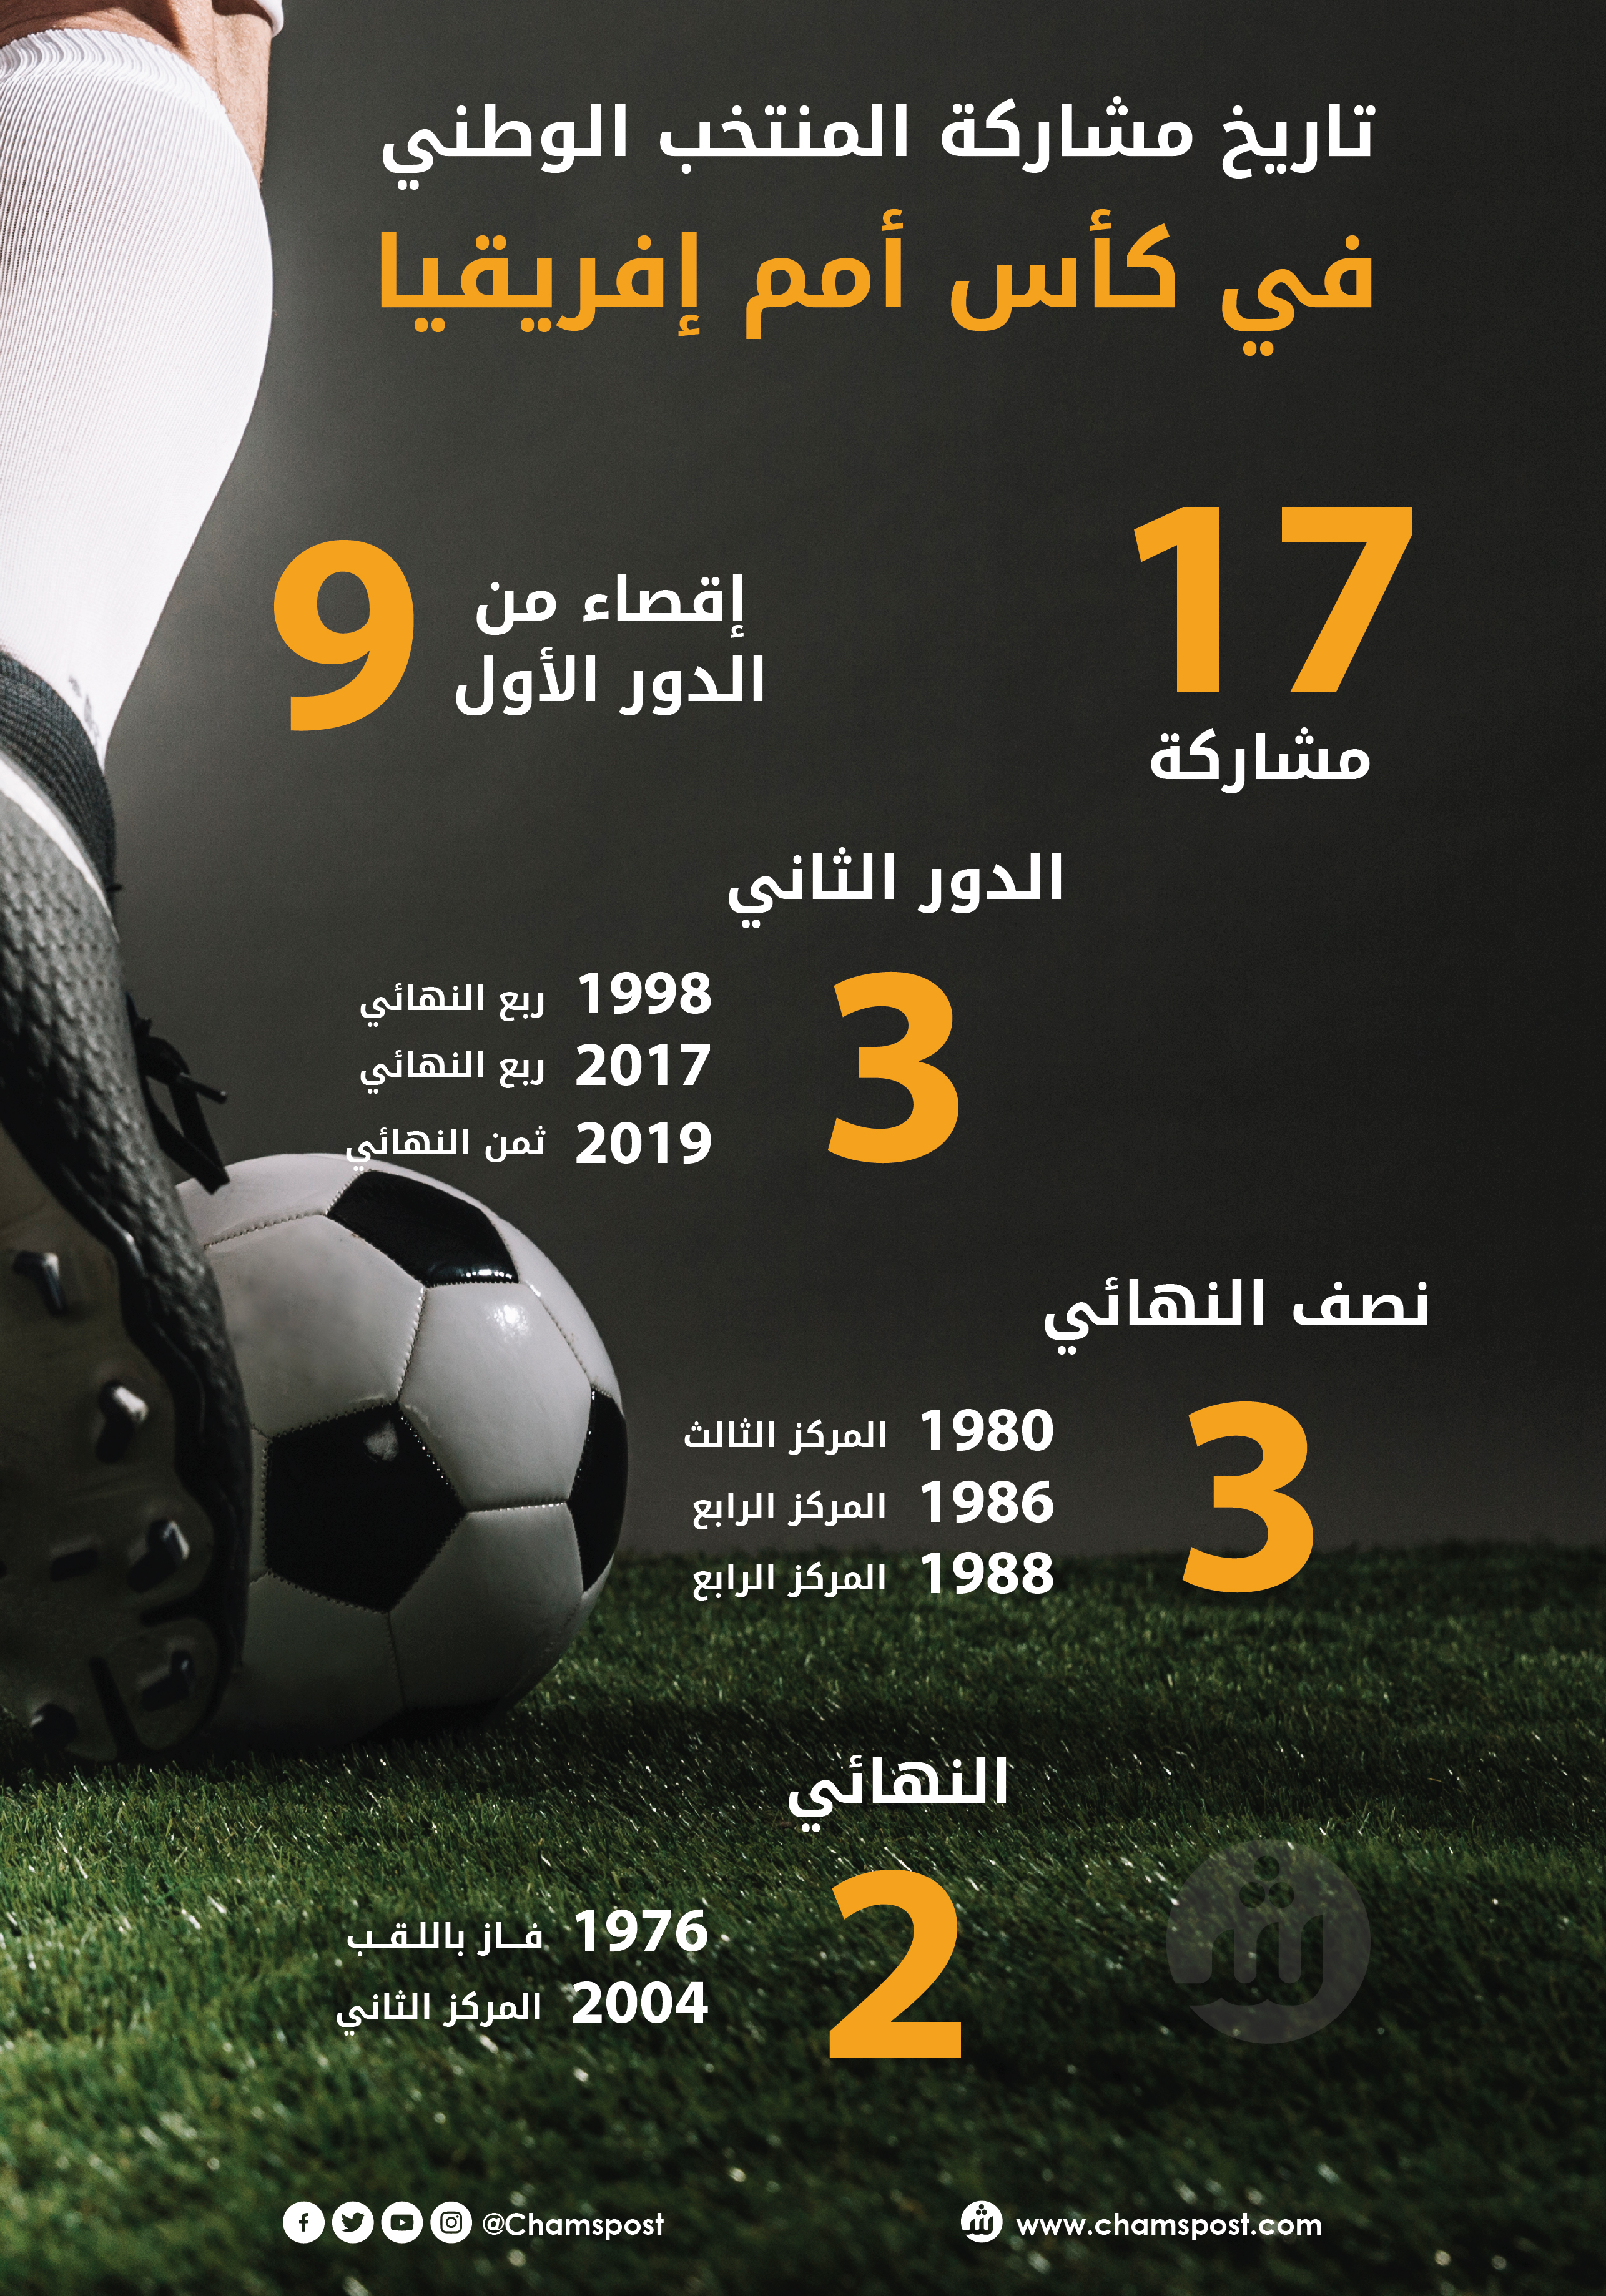 17 مشاركة ولقب وحيد تاريخ المنتخب في كأس أمم إفريقيا